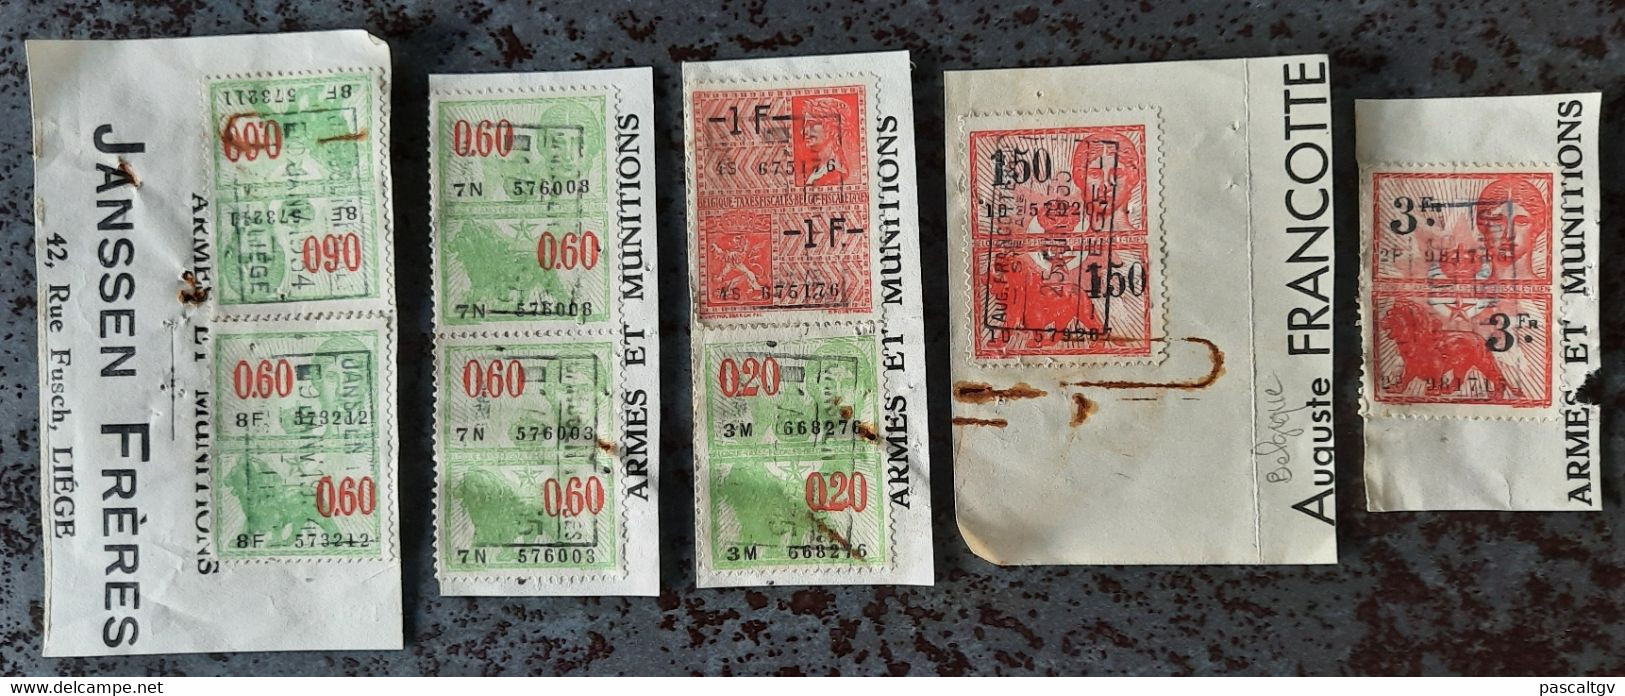 BELGIQUE - Timbres FISCAUX, - Stamps